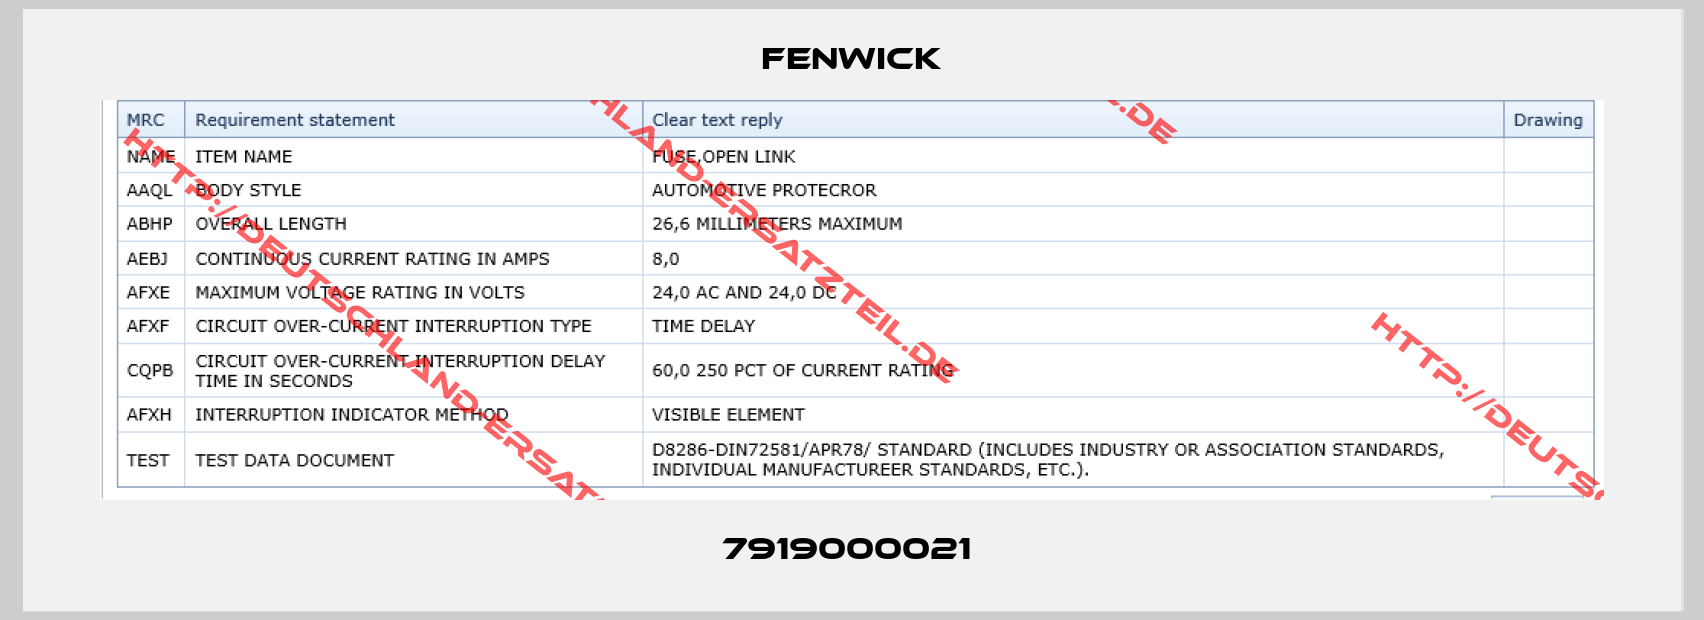 Fenwick-7919000021 